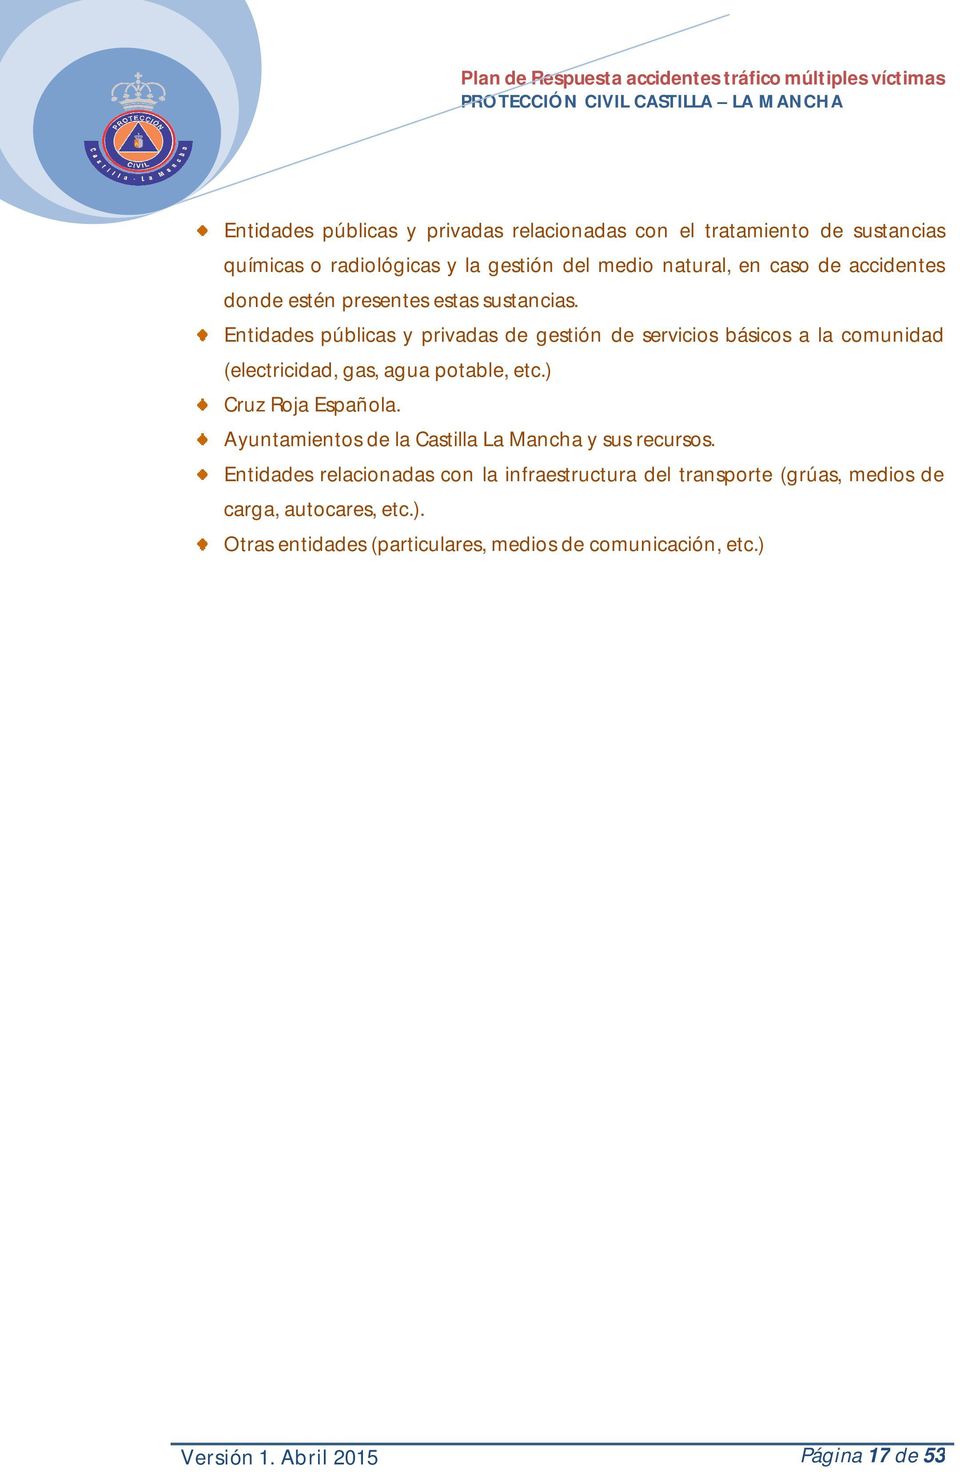 Entidades públicas y privadas de gestión de servicios básicos a la comunidad (electricidad, gas, agua potable, etc.) Cruz Roja Española.